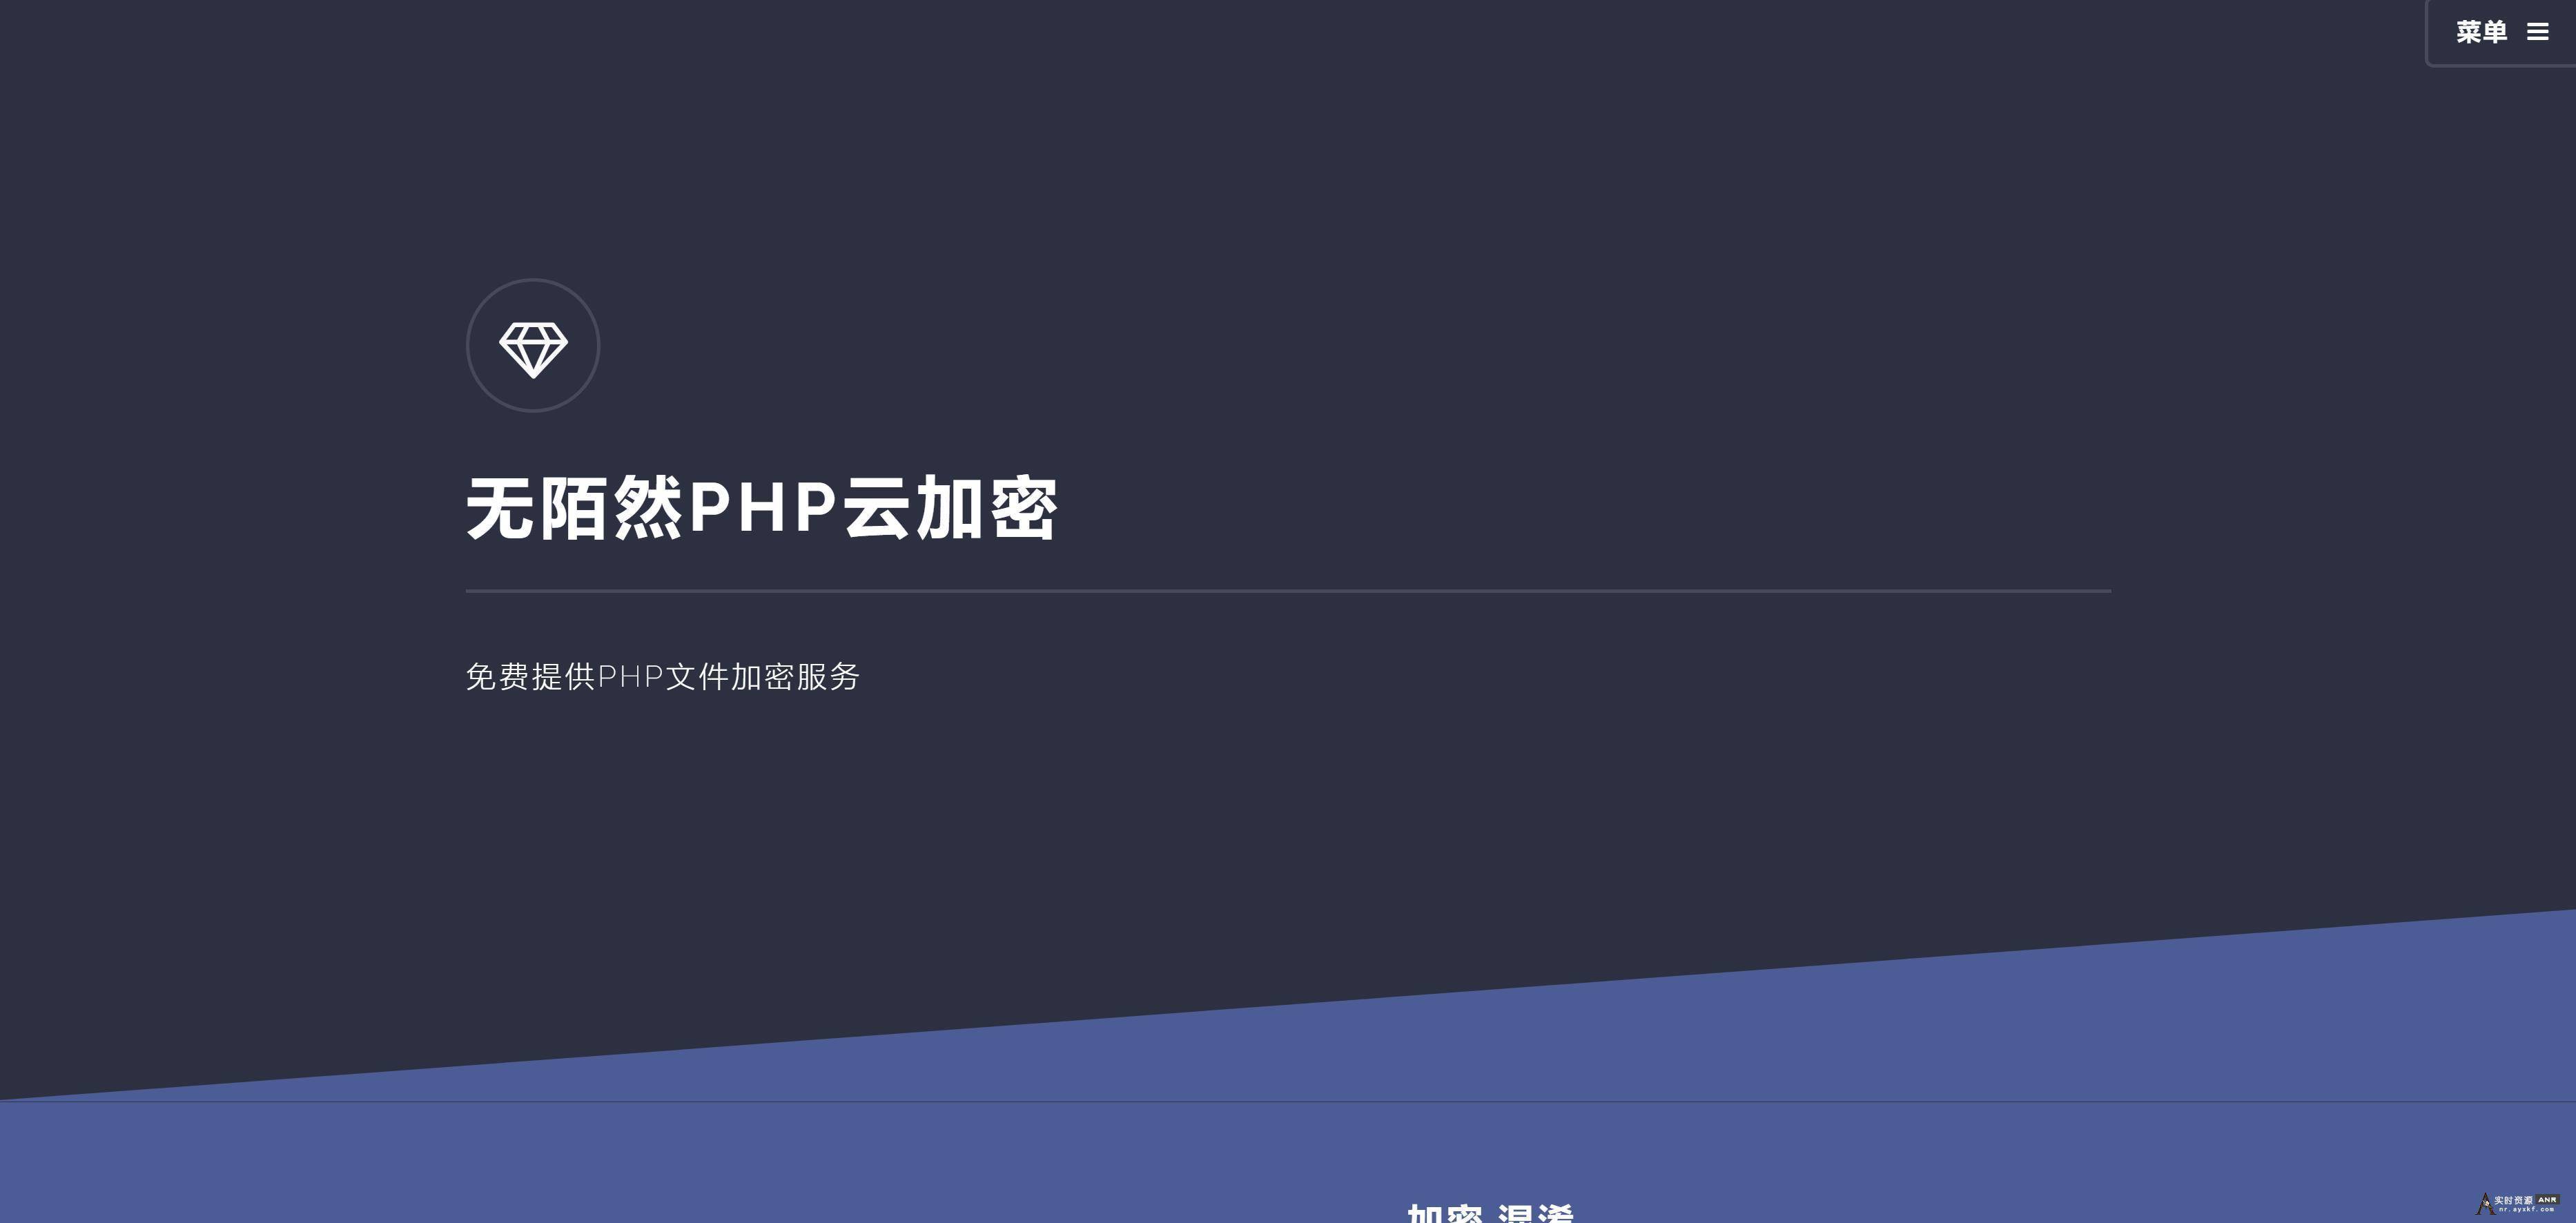 2019最新可用的PHP云加密平台免费分享 网络资源 图1张